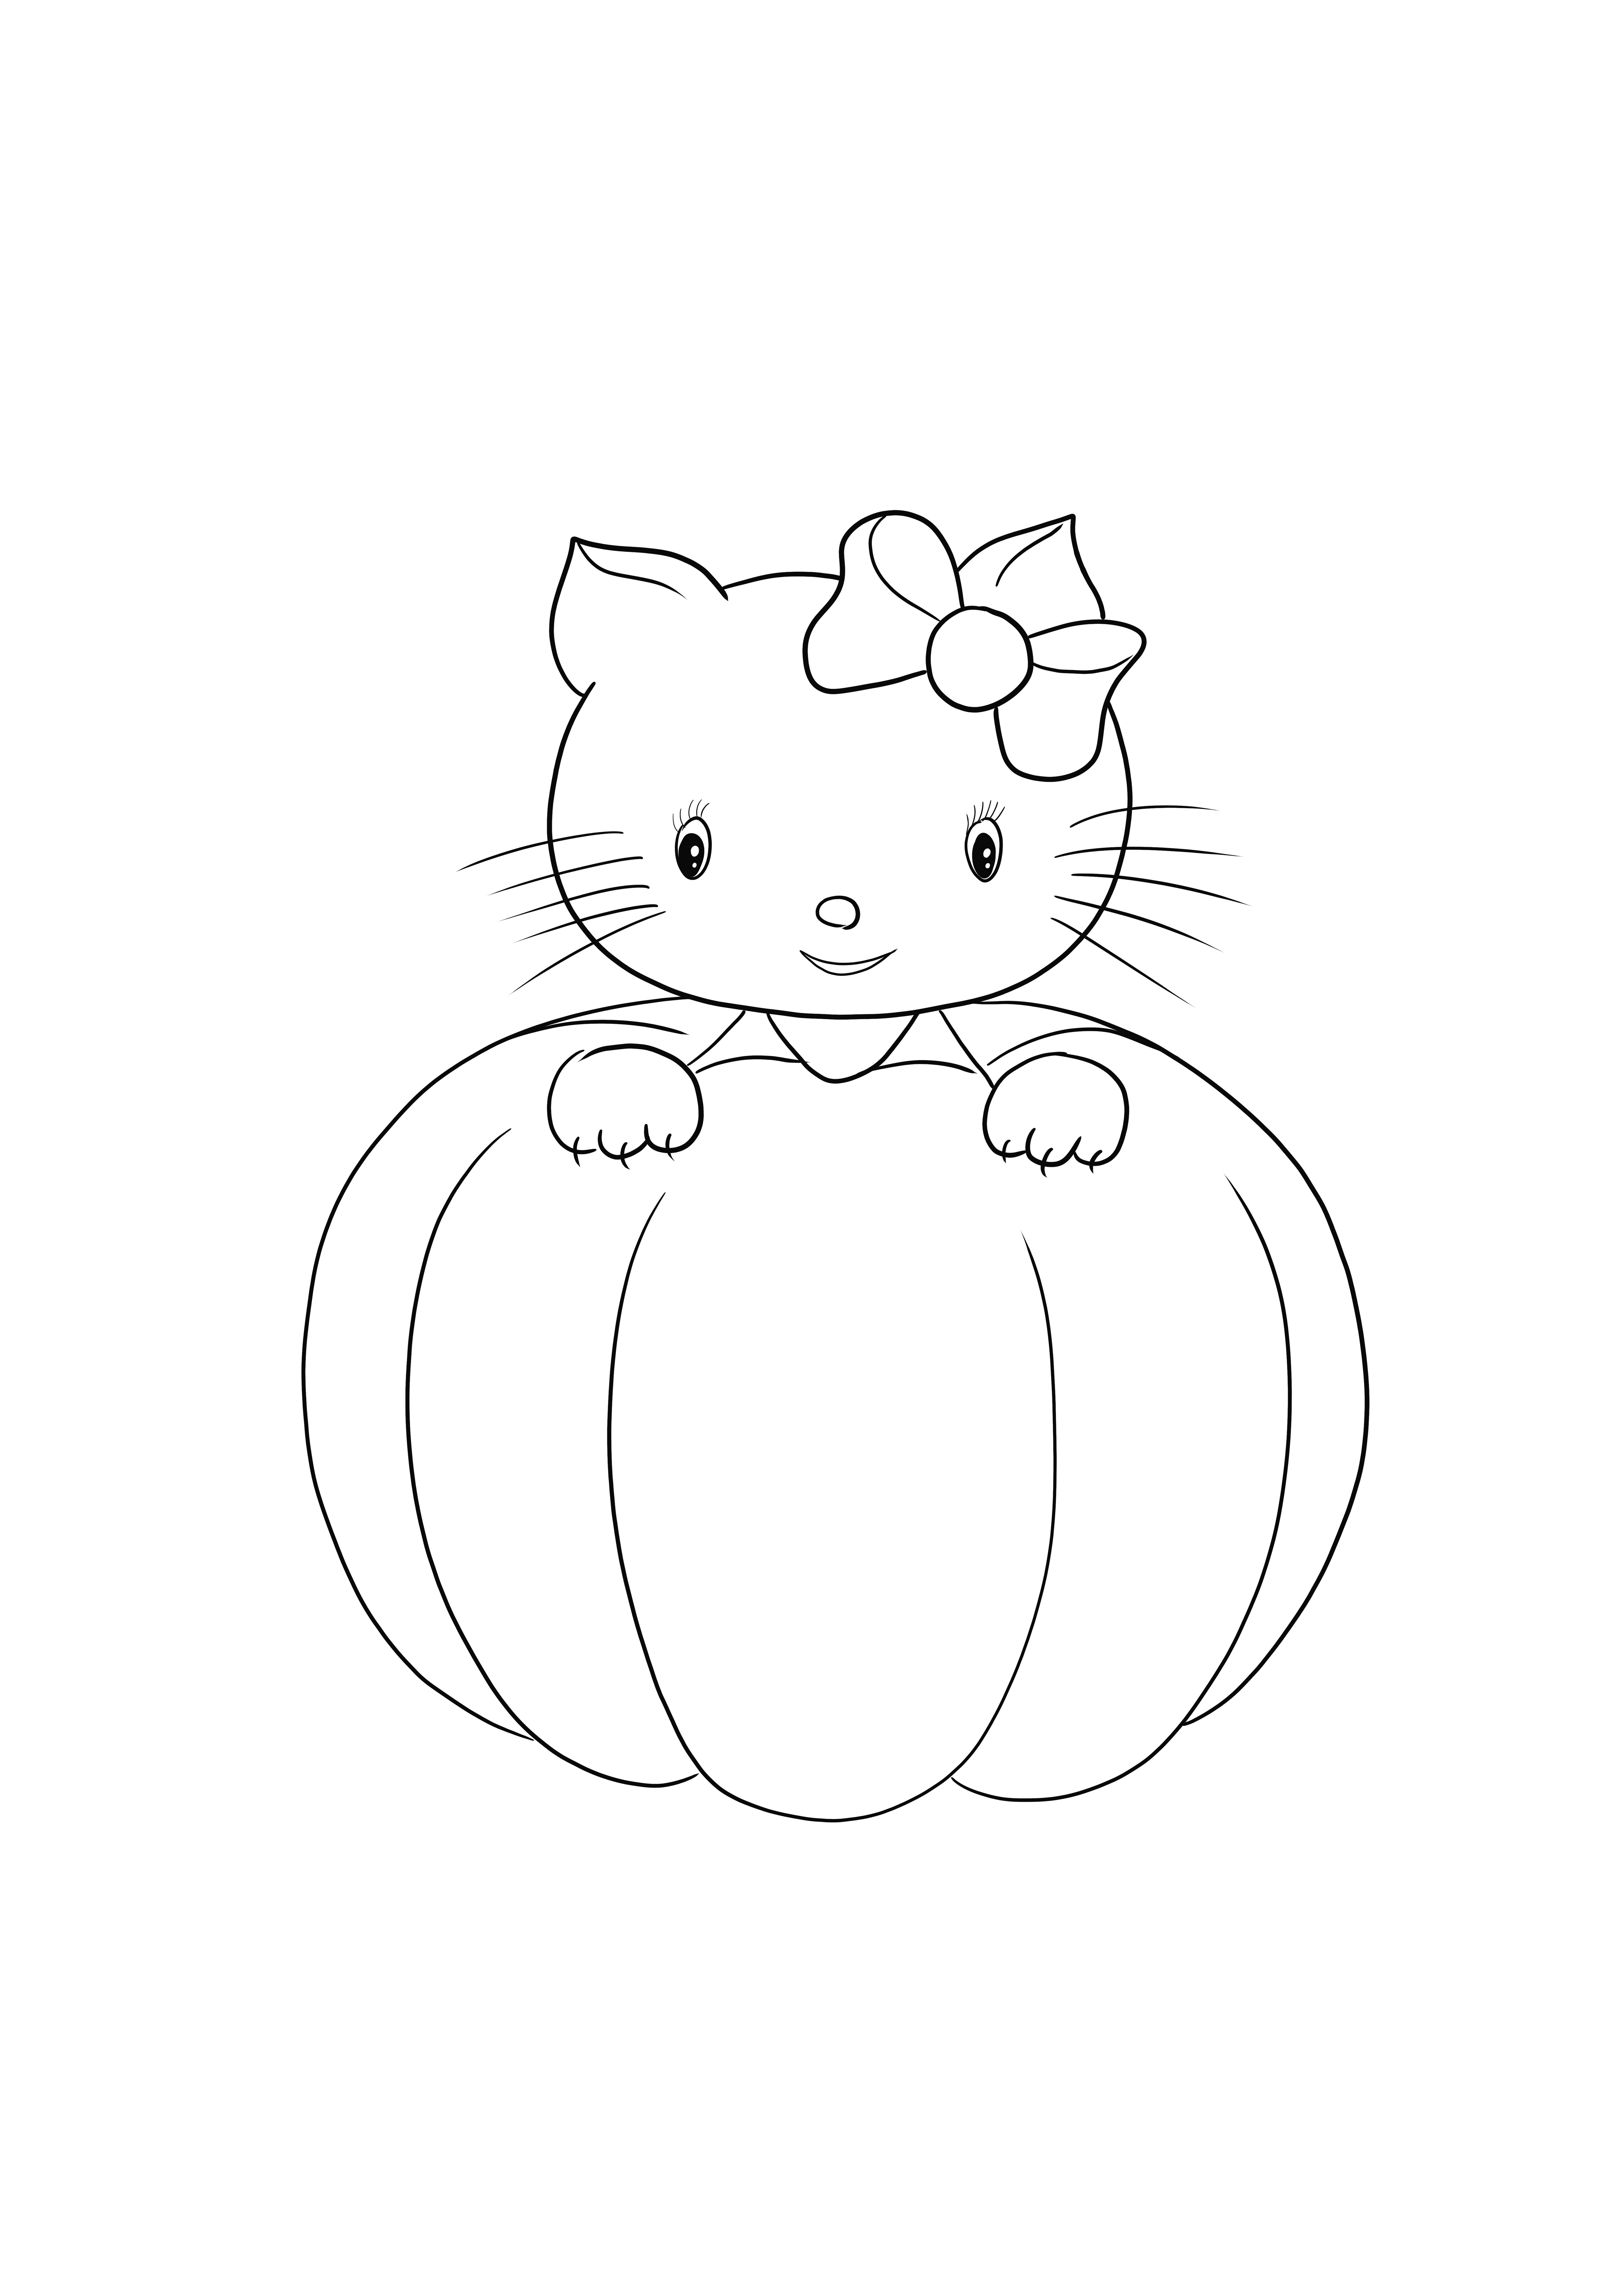 Hello Kitty Halloween é simples e gratuito para colorir a imagem ou salvar para mais tarde